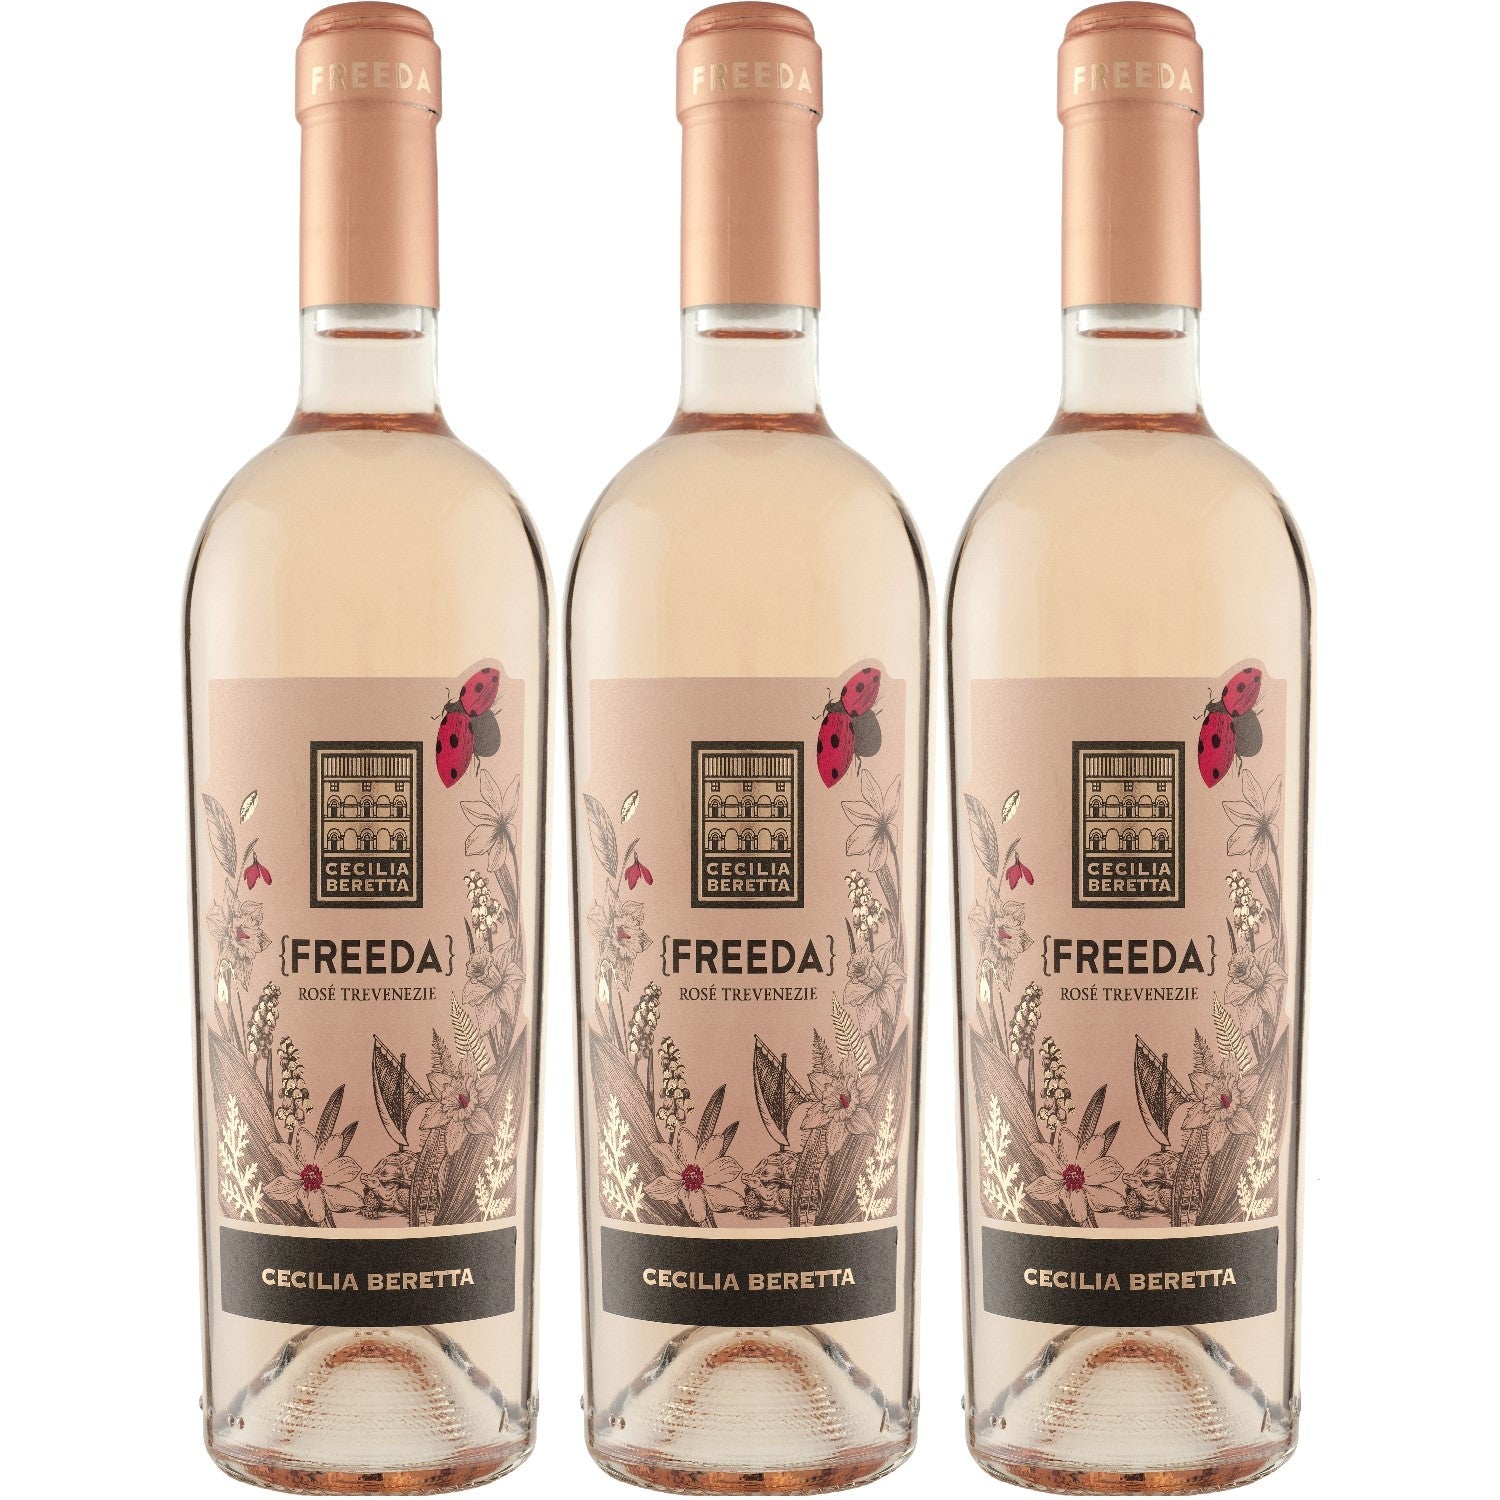 Cecilia Beretta Freeda Rosé Trevenezie IGT Roséwein Wein trocken Italien (3 x 0.75l) - Versanel -